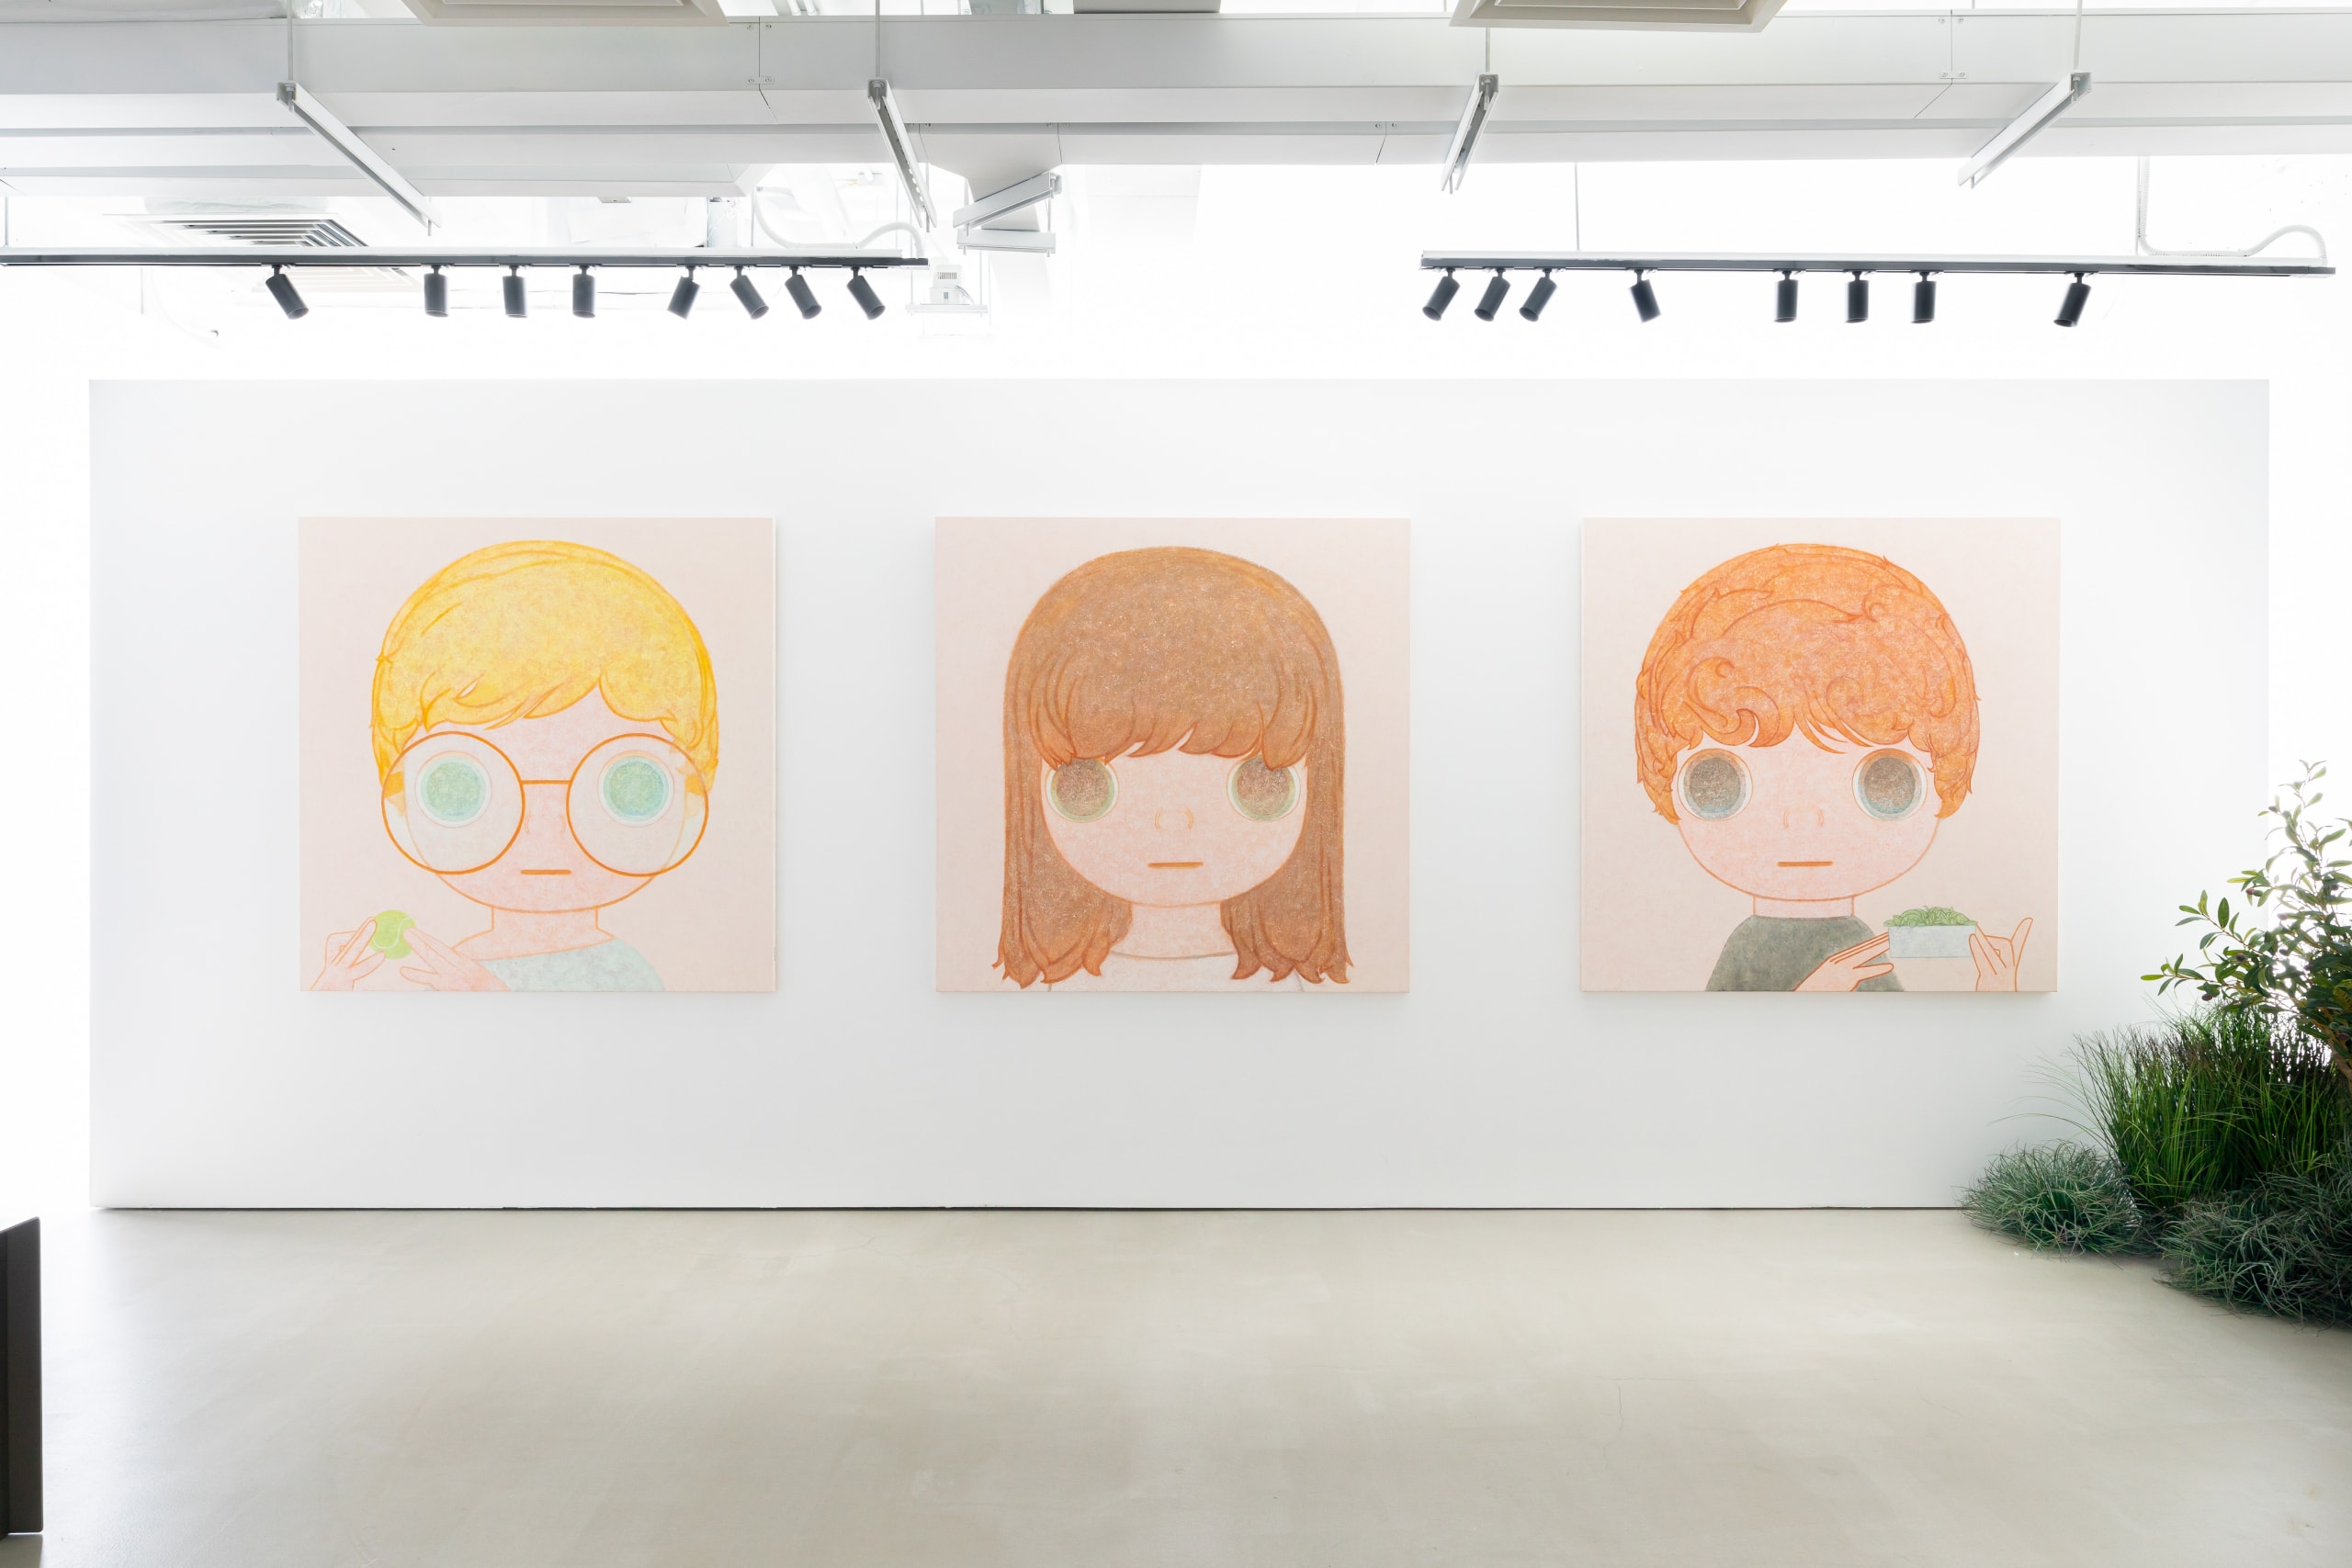 率先走進韓國藝術家 Kang Jun Seok 首次國際個展《My Mate in HK》